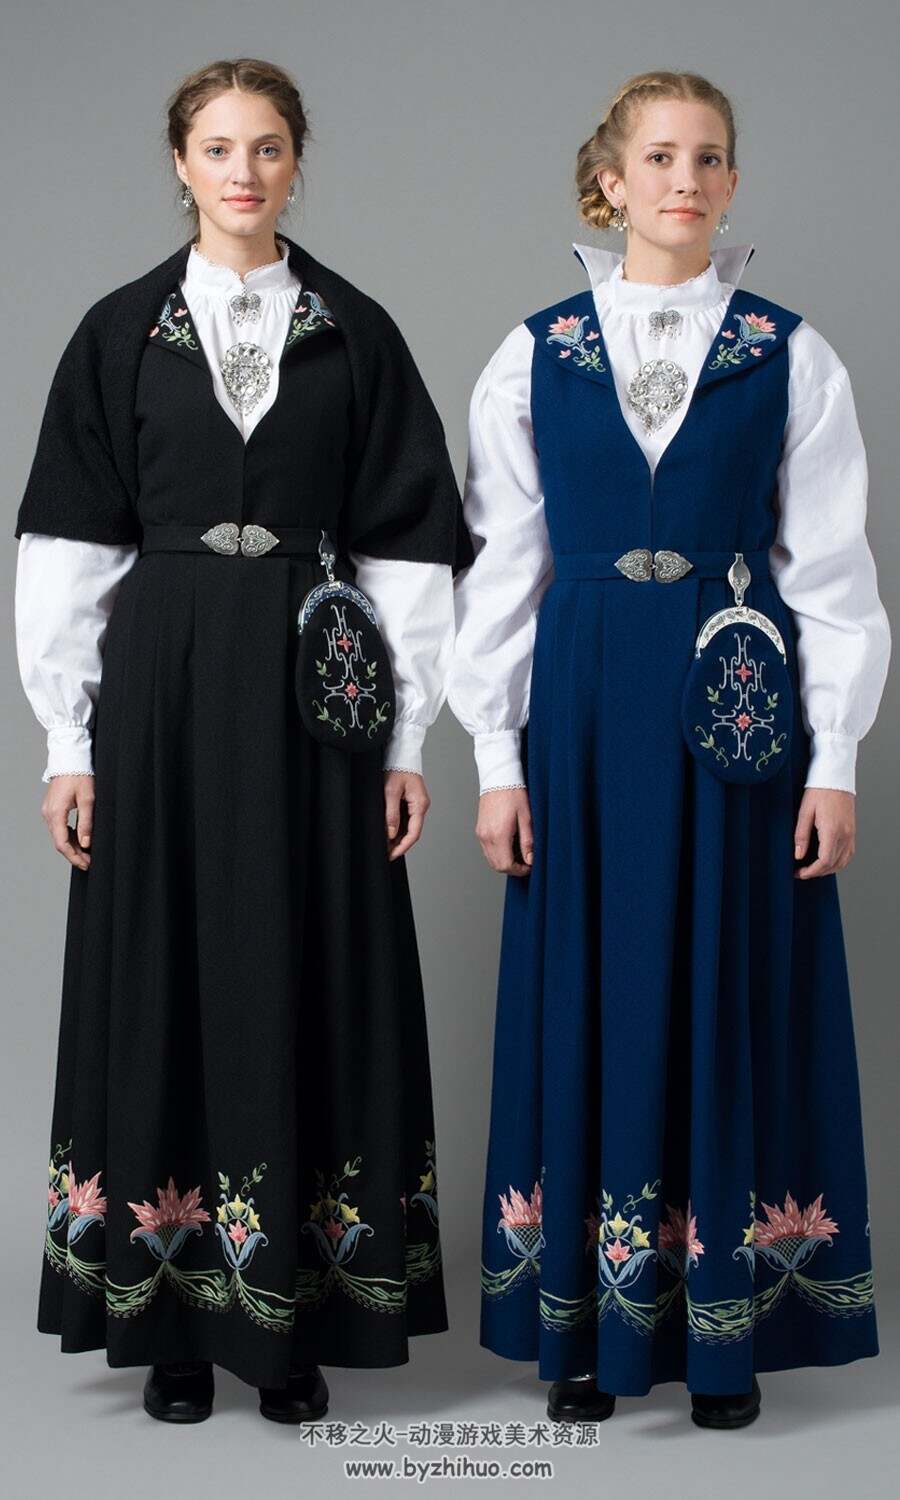 北欧挪威传统服饰参考图集 178P